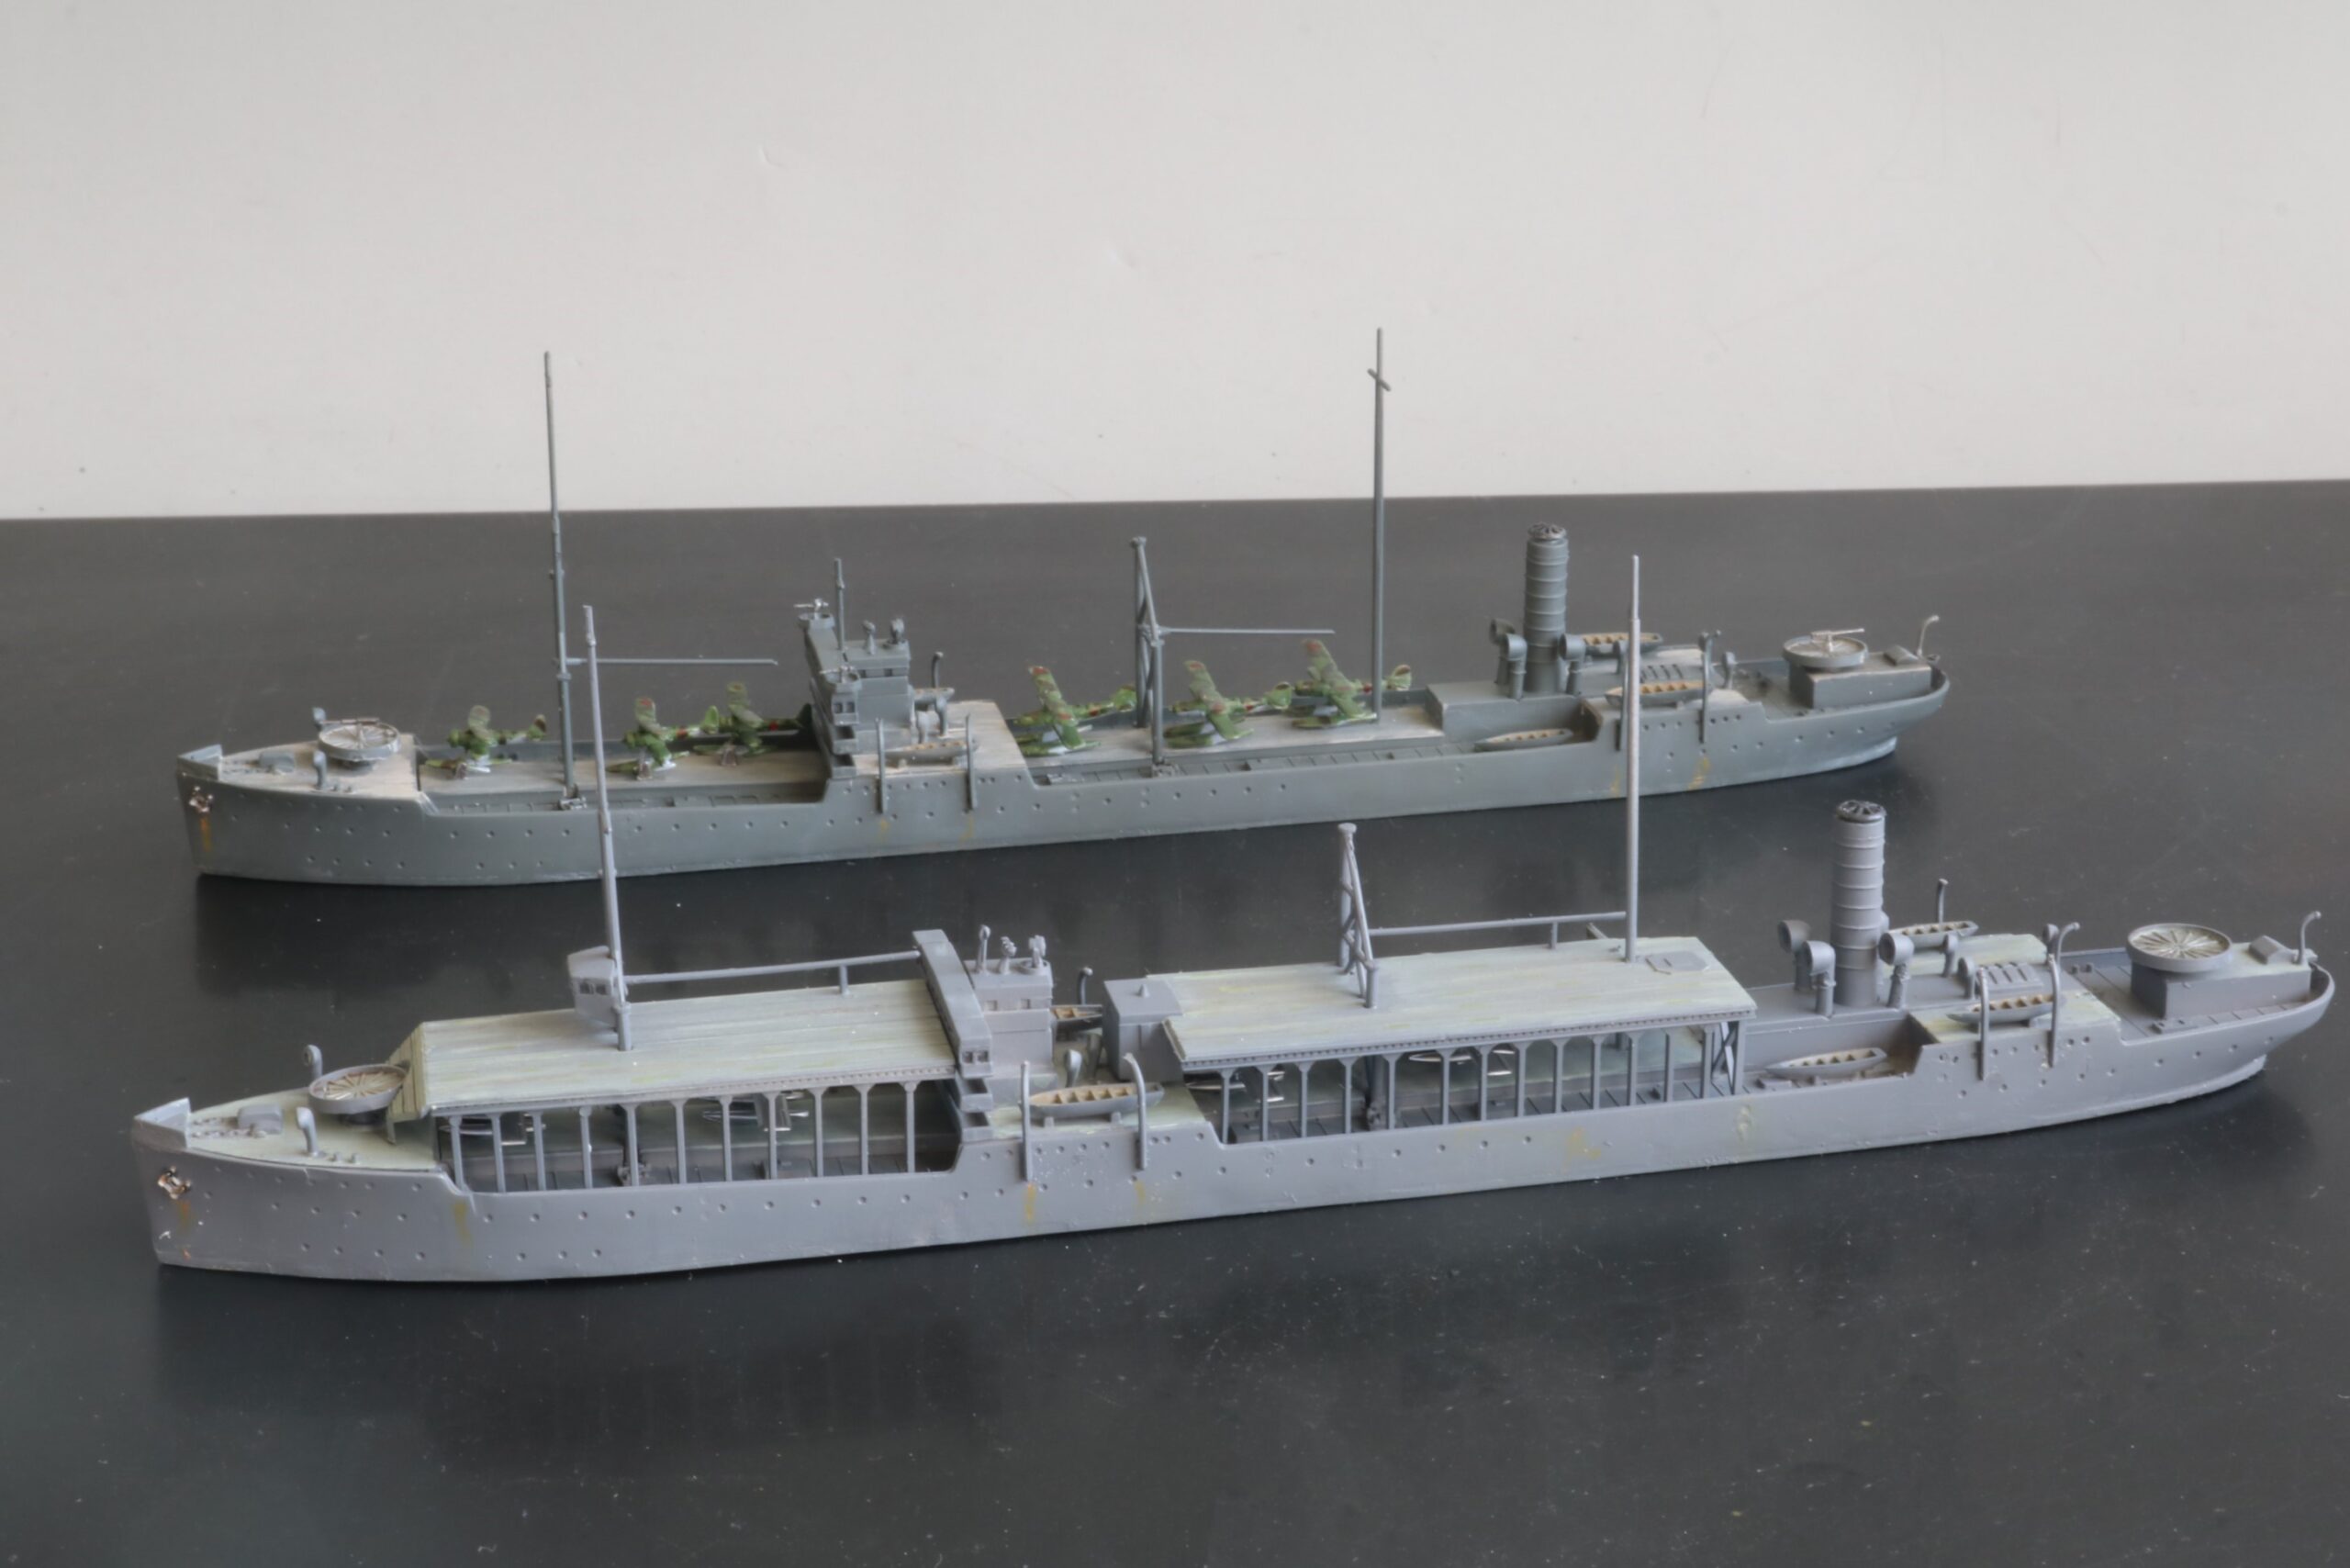 艦艇模型ビフォアーアフター 水上機母艦 能登呂 model ships before-after Seaplane Tender Notoro